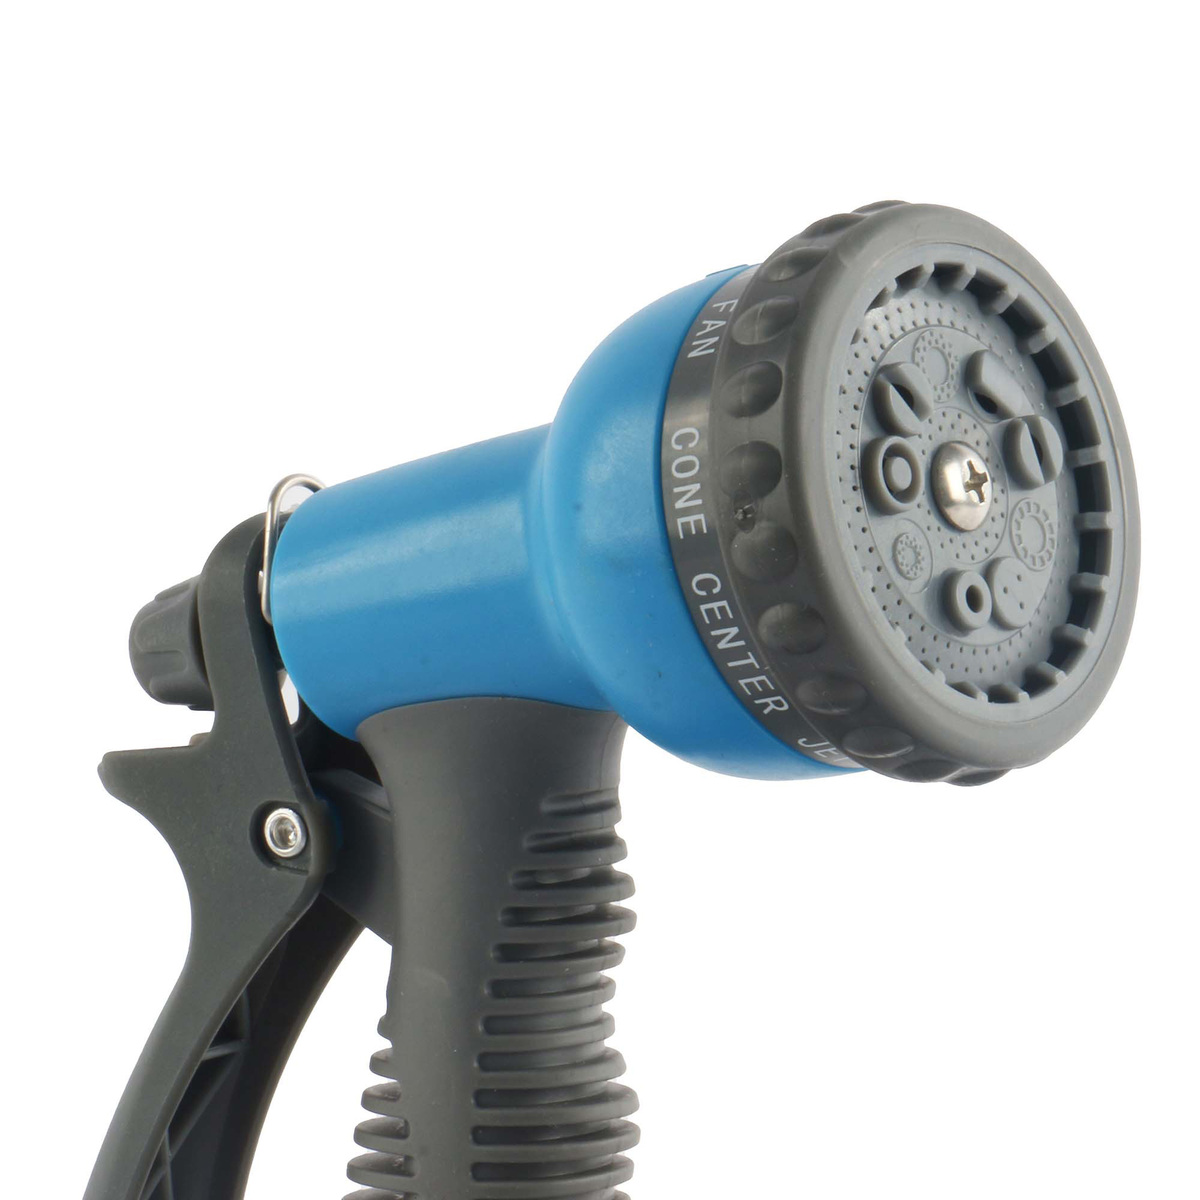 Aqua Craft Pistol Hose Nozzle Set, 1/2 inches, 4 Pcs, Blue/Grey/Black, 27603